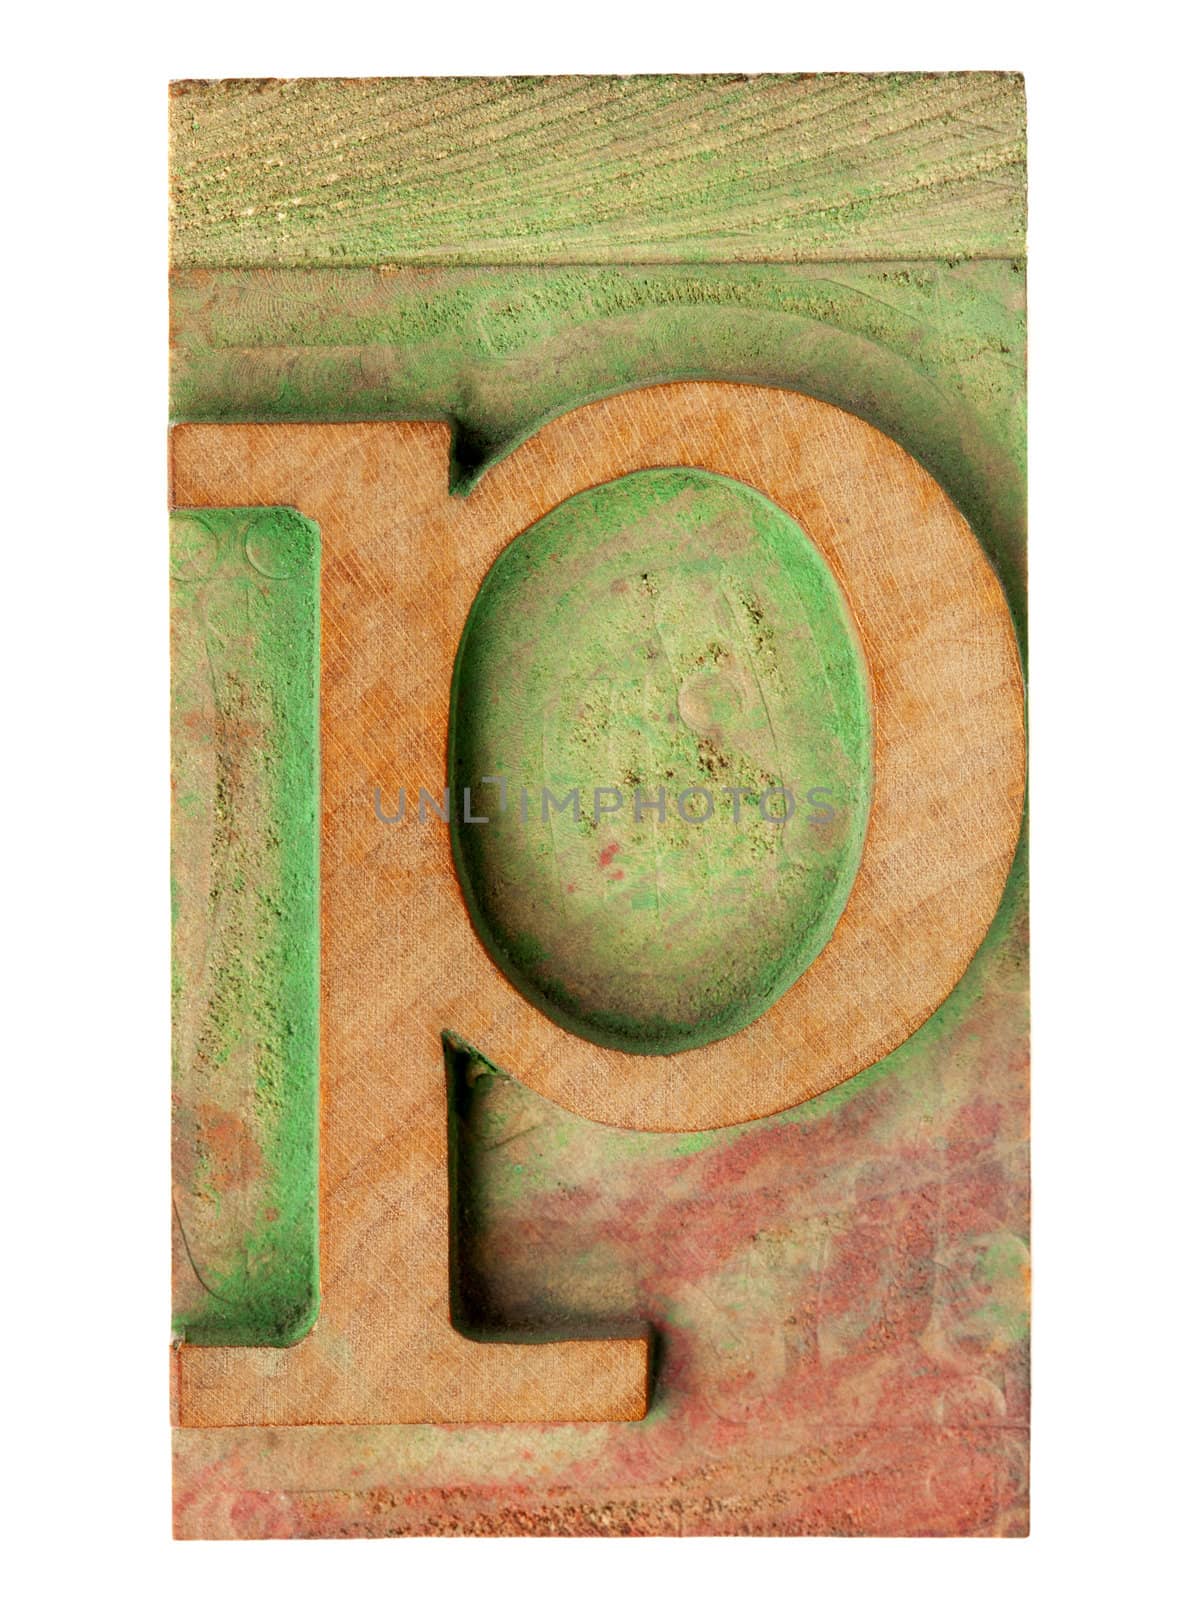 letter p in letterpress wood type by PixelsAway